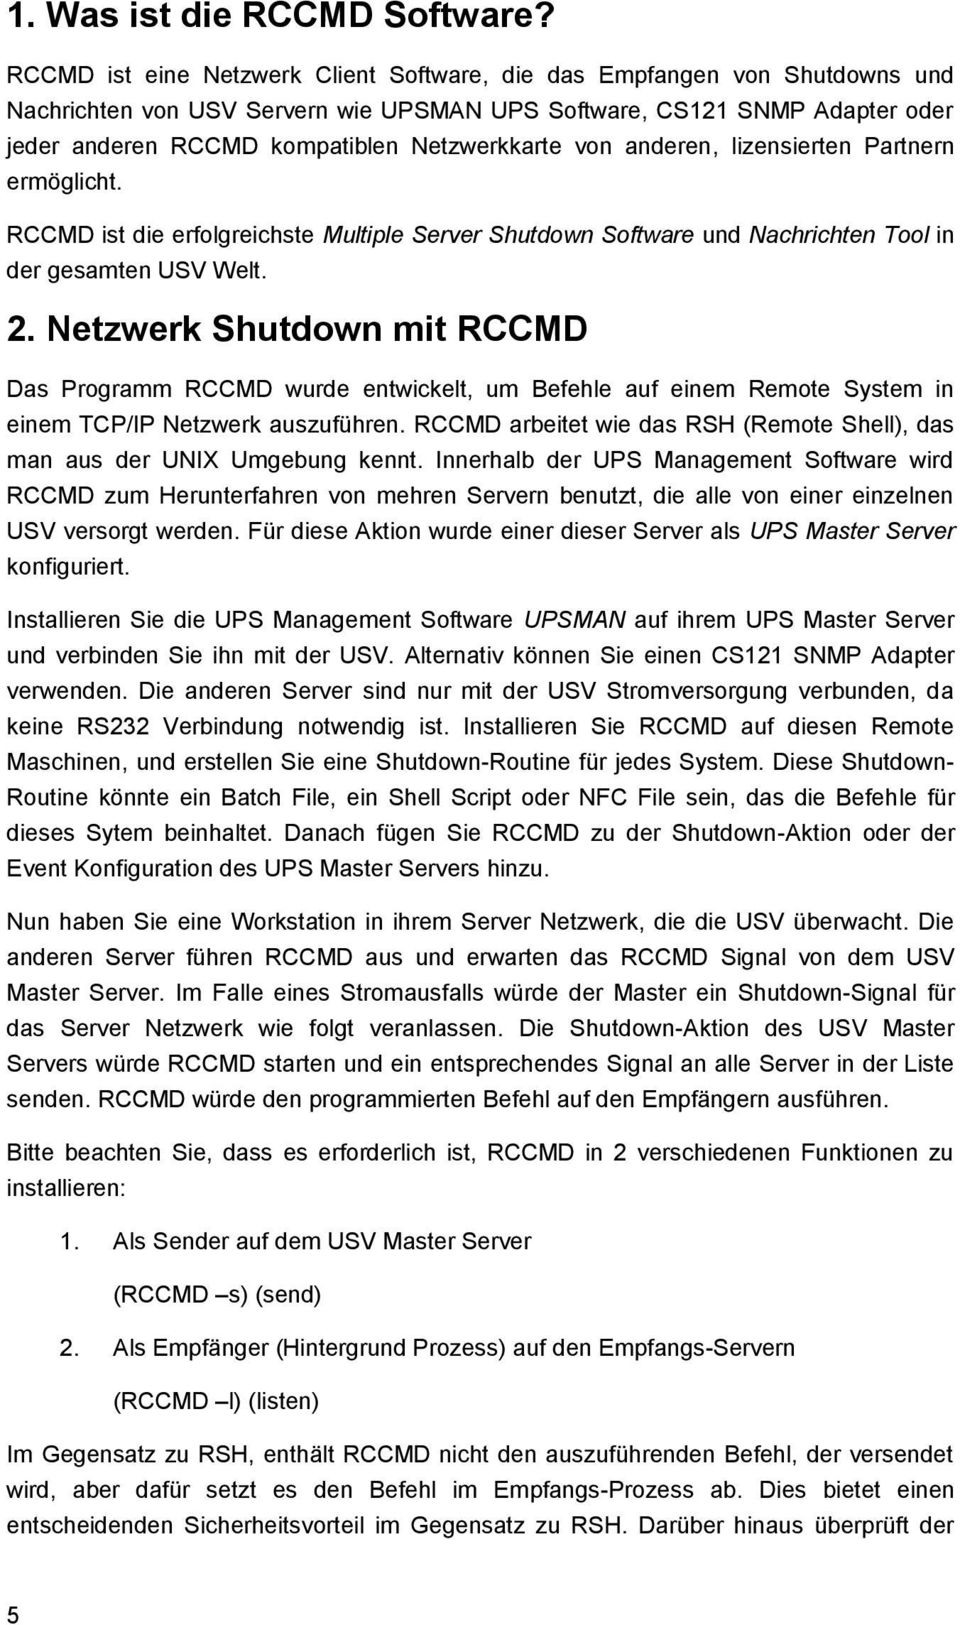 von anderen, lizensierten Partnern ermöglicht. RCCMD ist die erfolgreichste Multiple Server Shutdown Software und Nachrichten Tool in der gesamten USV Welt. 2.